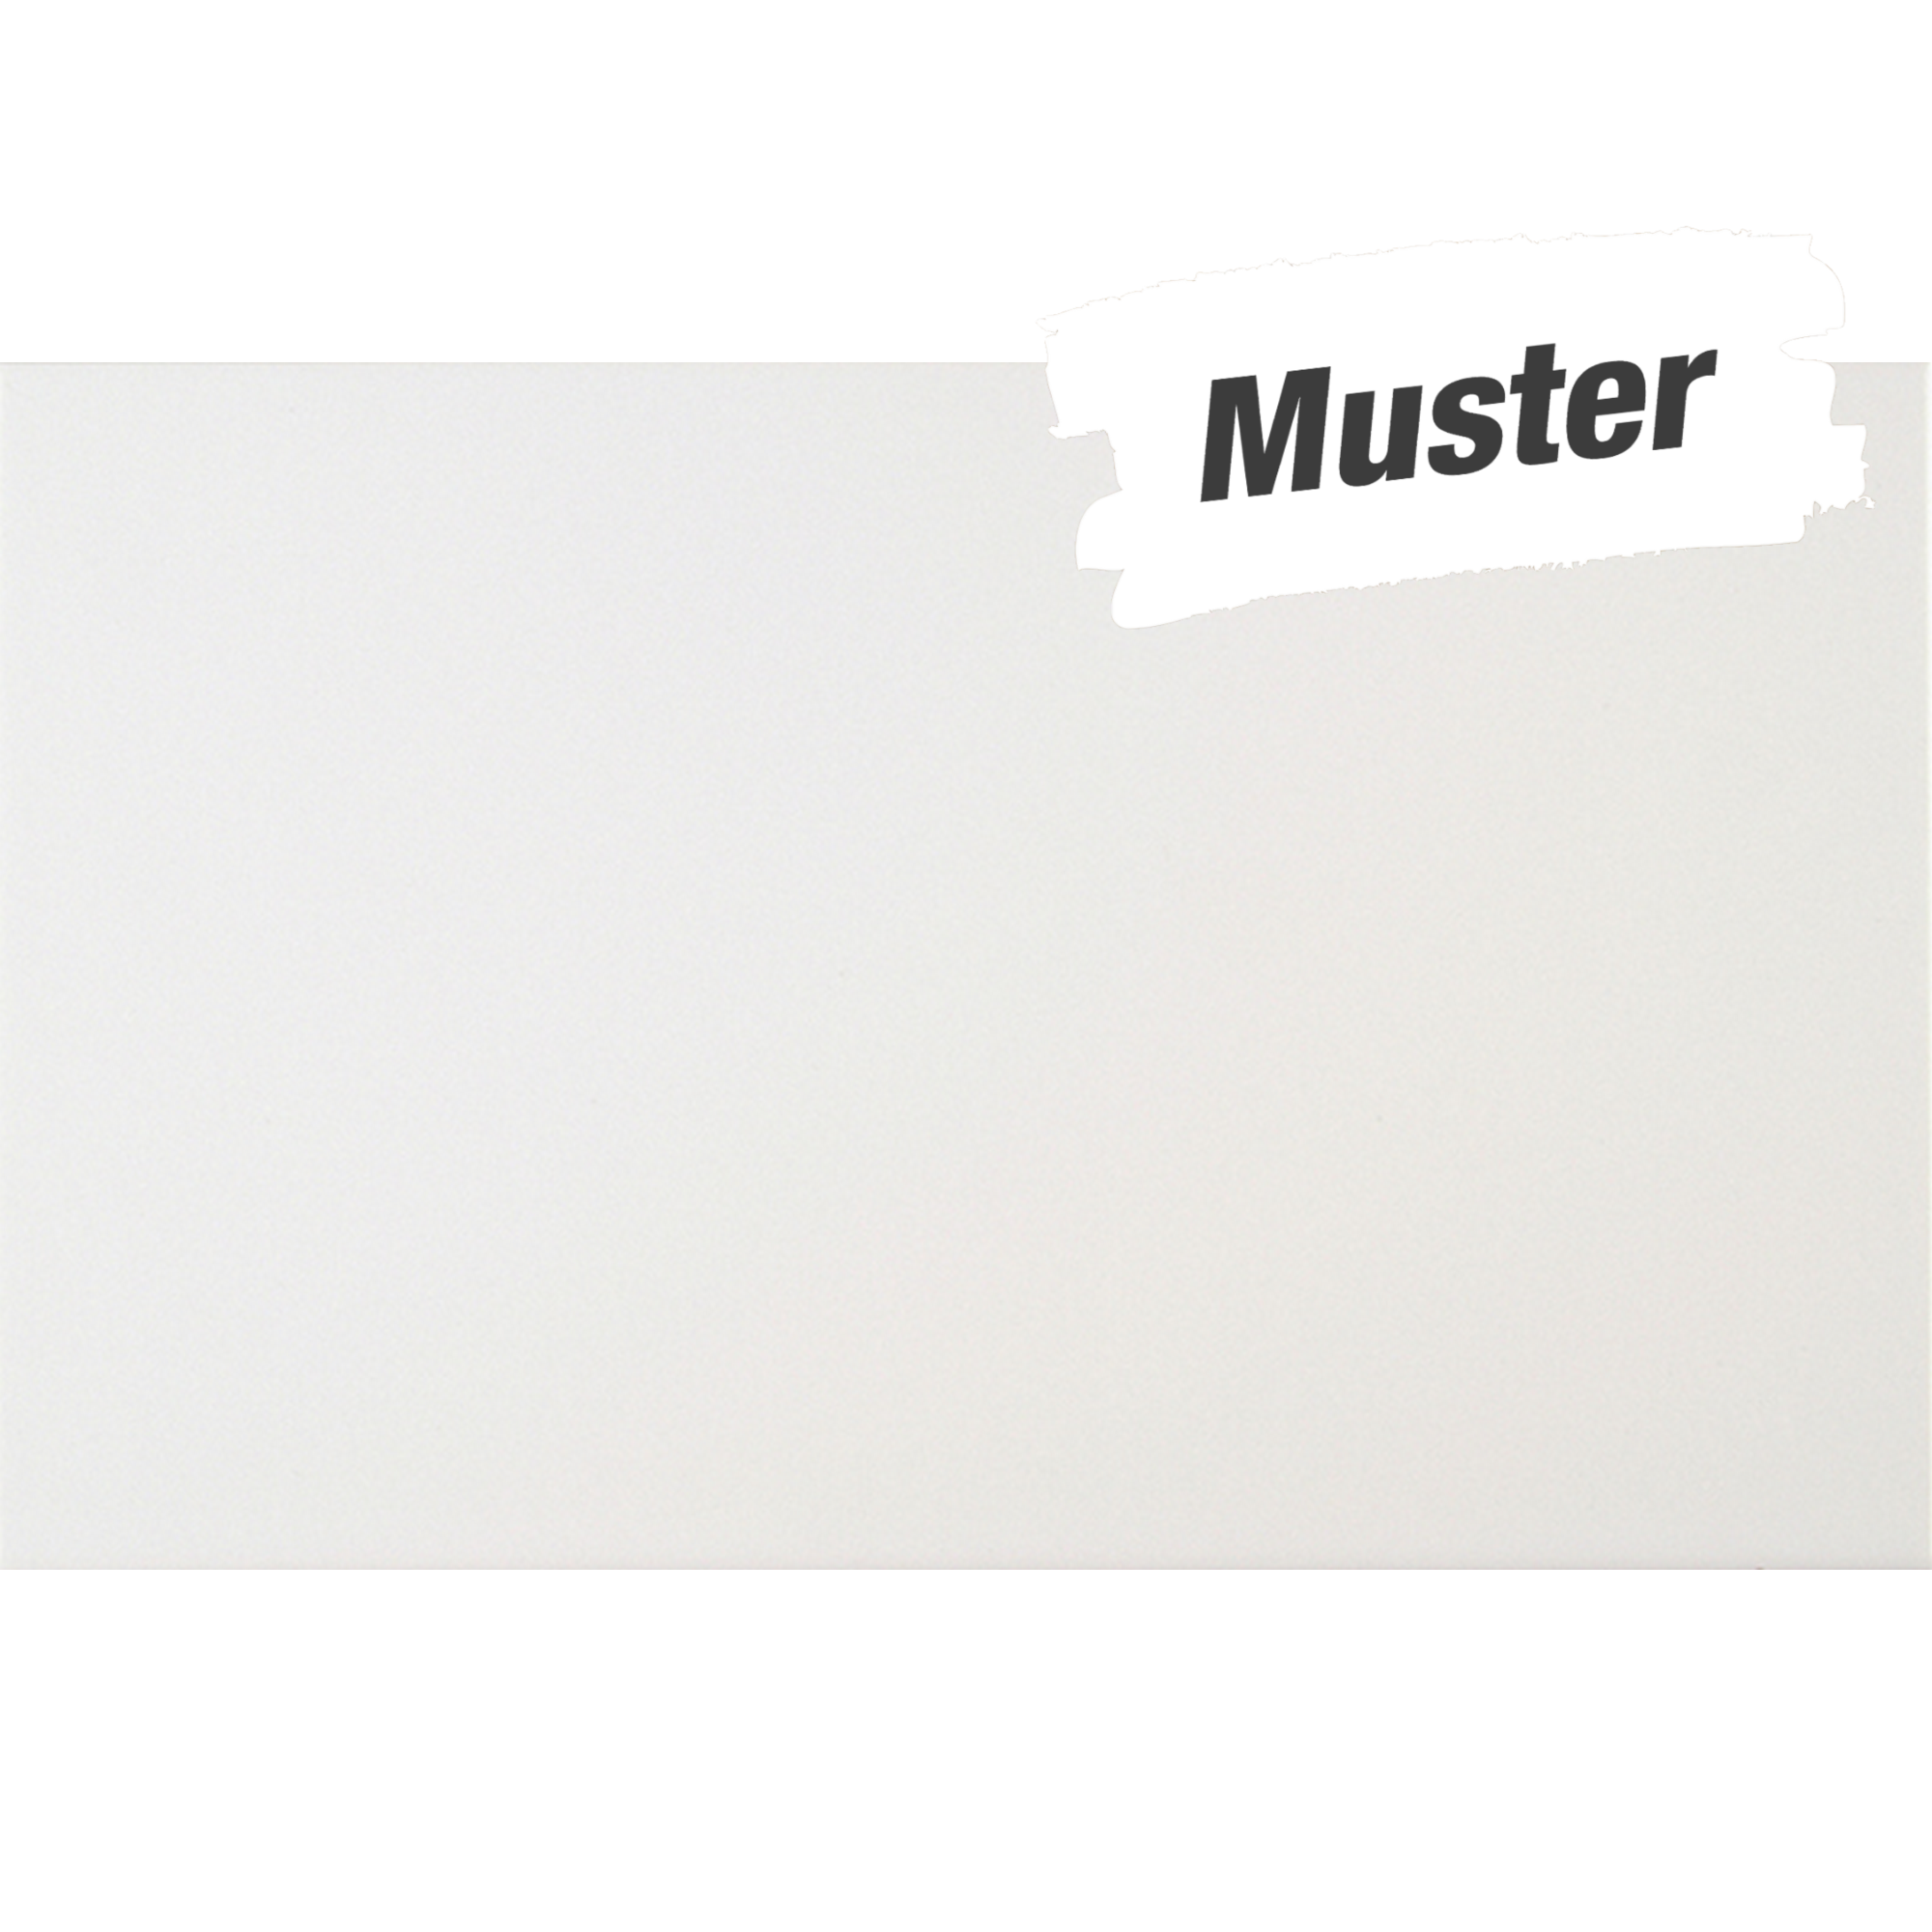 Muster zu Bodenfliese 'Arktis' Steingut weiß glänzend 25 x 40 cm + product picture